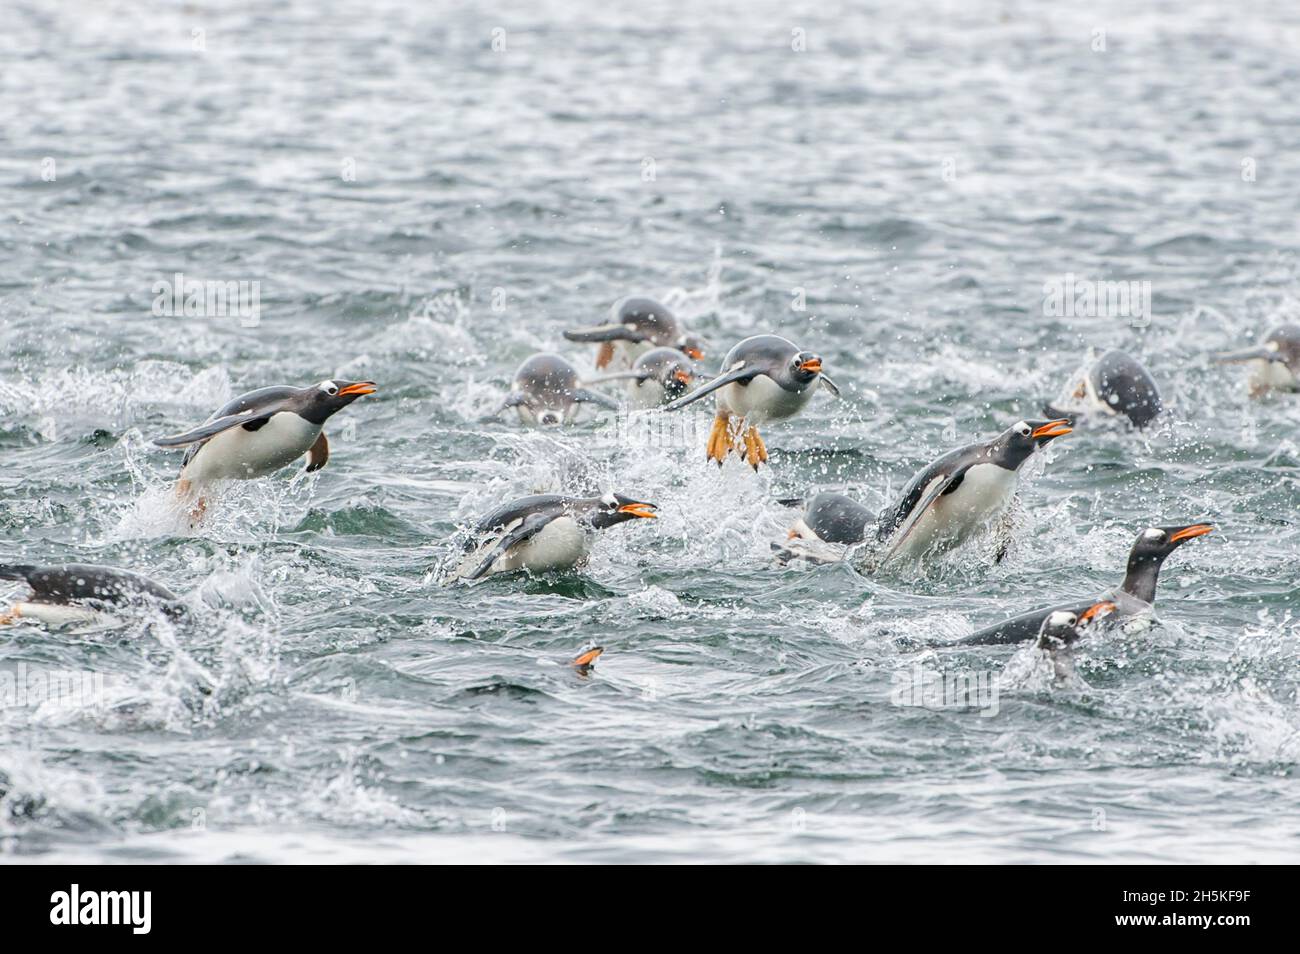 Groupe de pingouins gentoo (Pygoscelis papouasie) nageant, sautant et éclaboussant dans l'océan; îles Falkland, Antarctique Banque D'Images